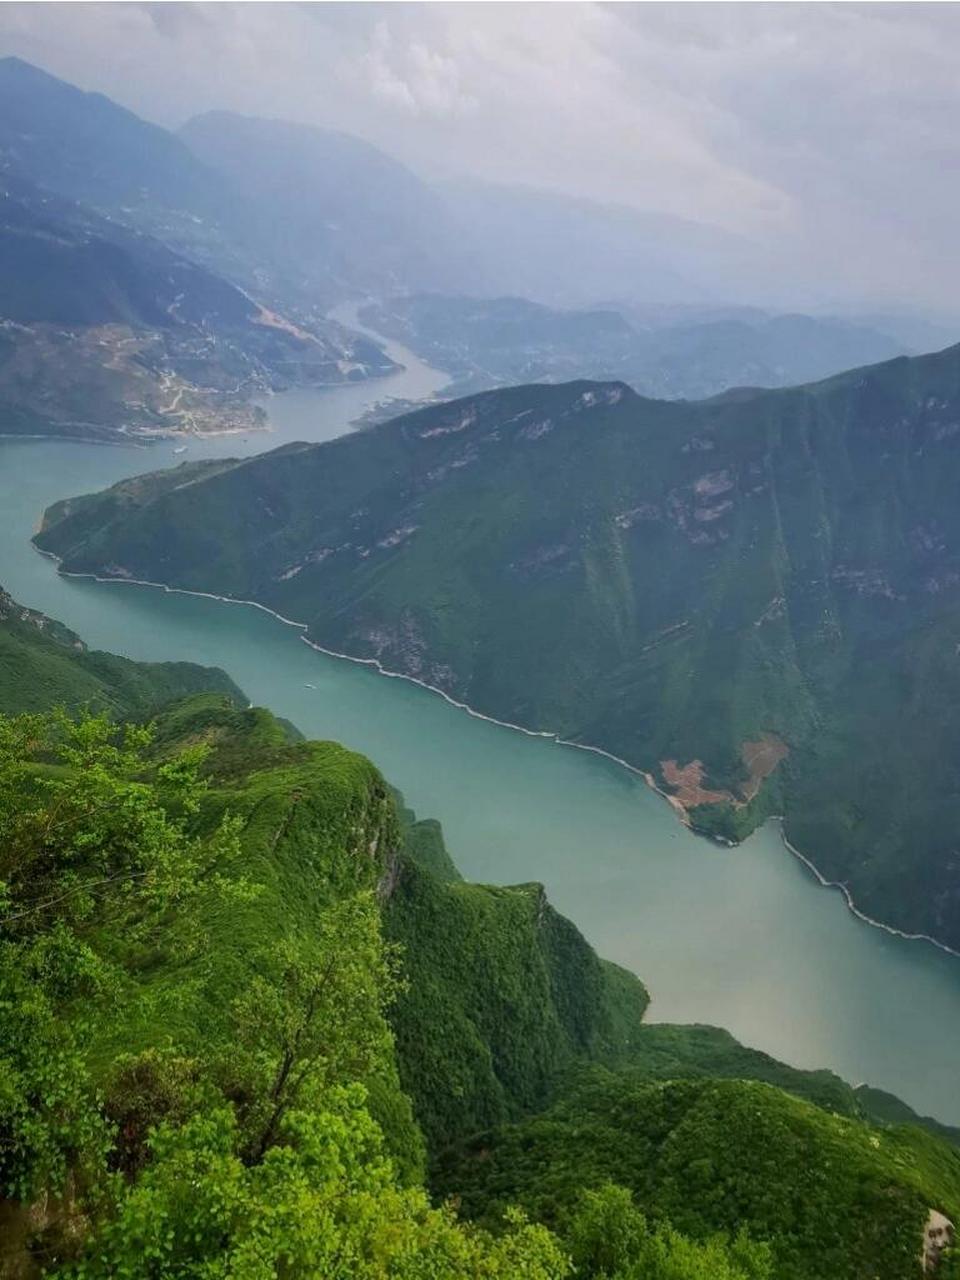 三峡之巅 三峡之巅风景区位于重庆市奉节县,地处长江三峡之首,因杜甫